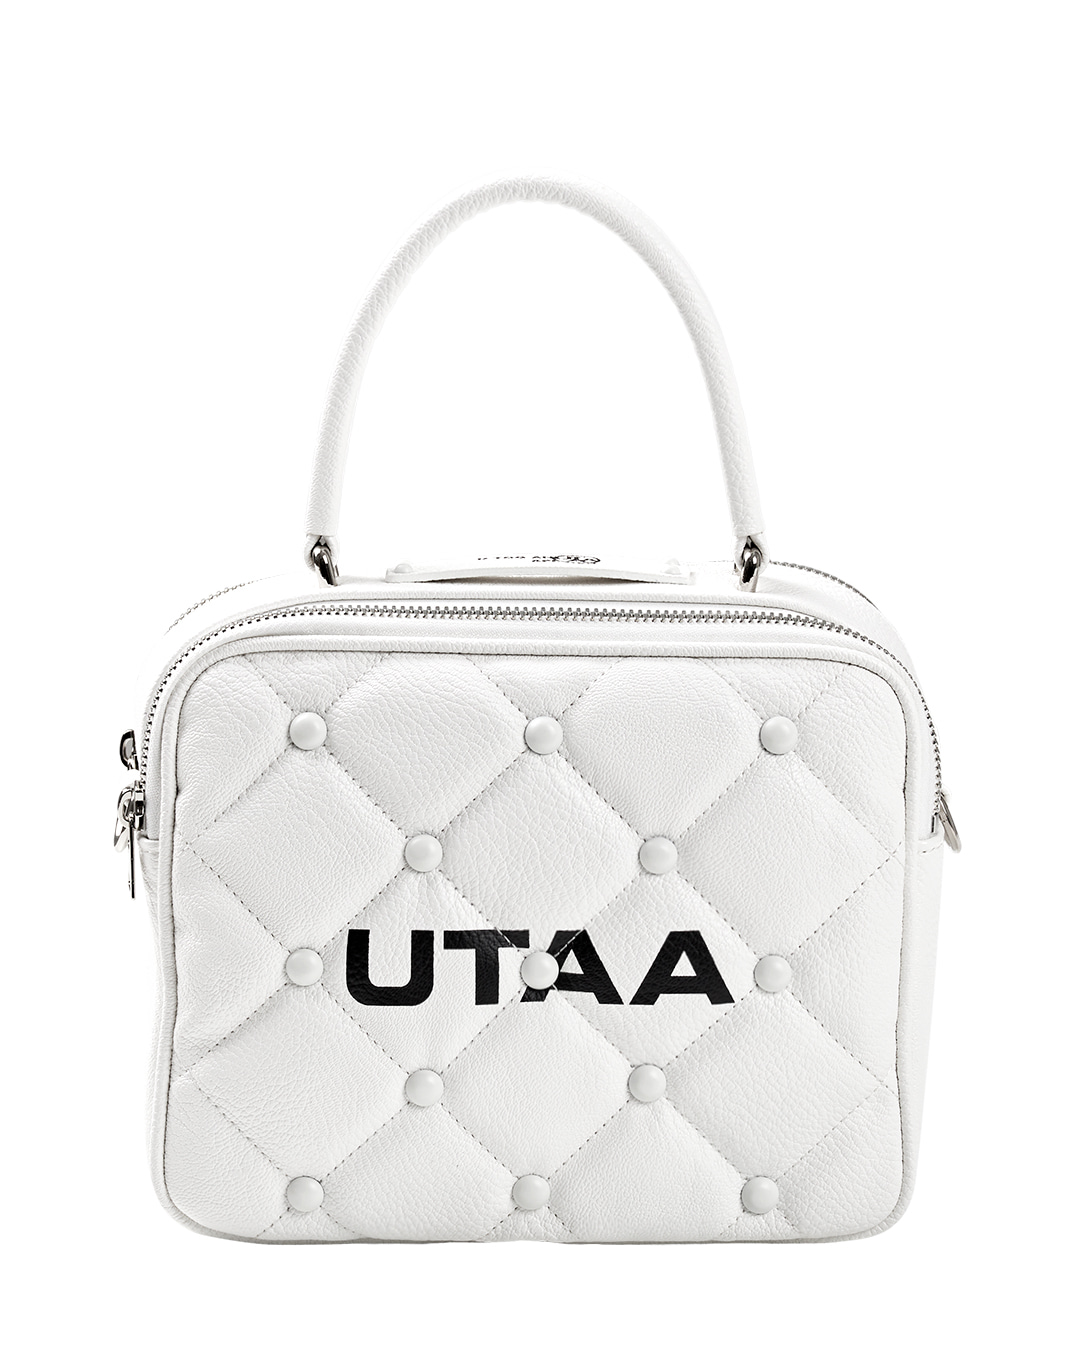 UTAA Quilting Pouch Bag : White (UA0GAU103WH)